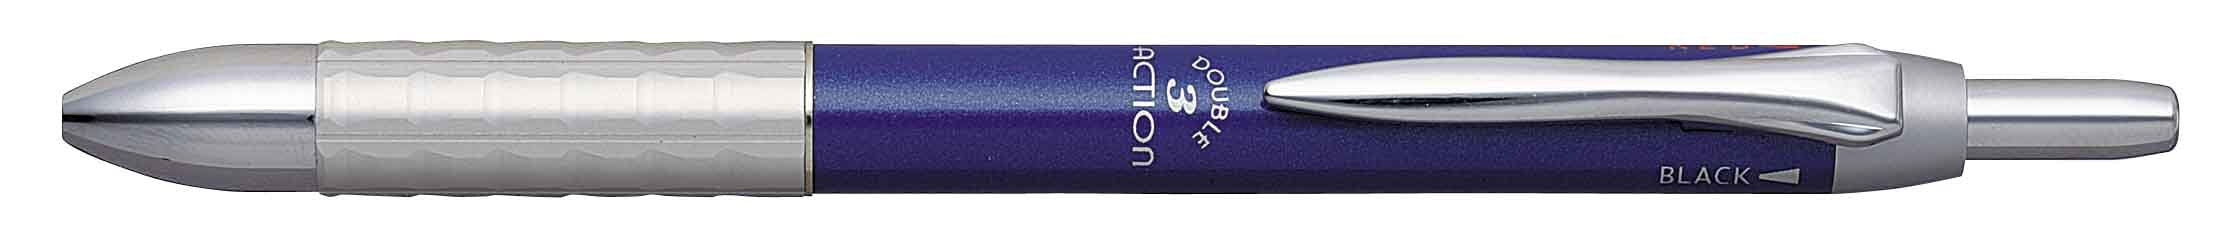 白金多功能钢笔双 3 动蓝色型号 Mwbk-3000#56